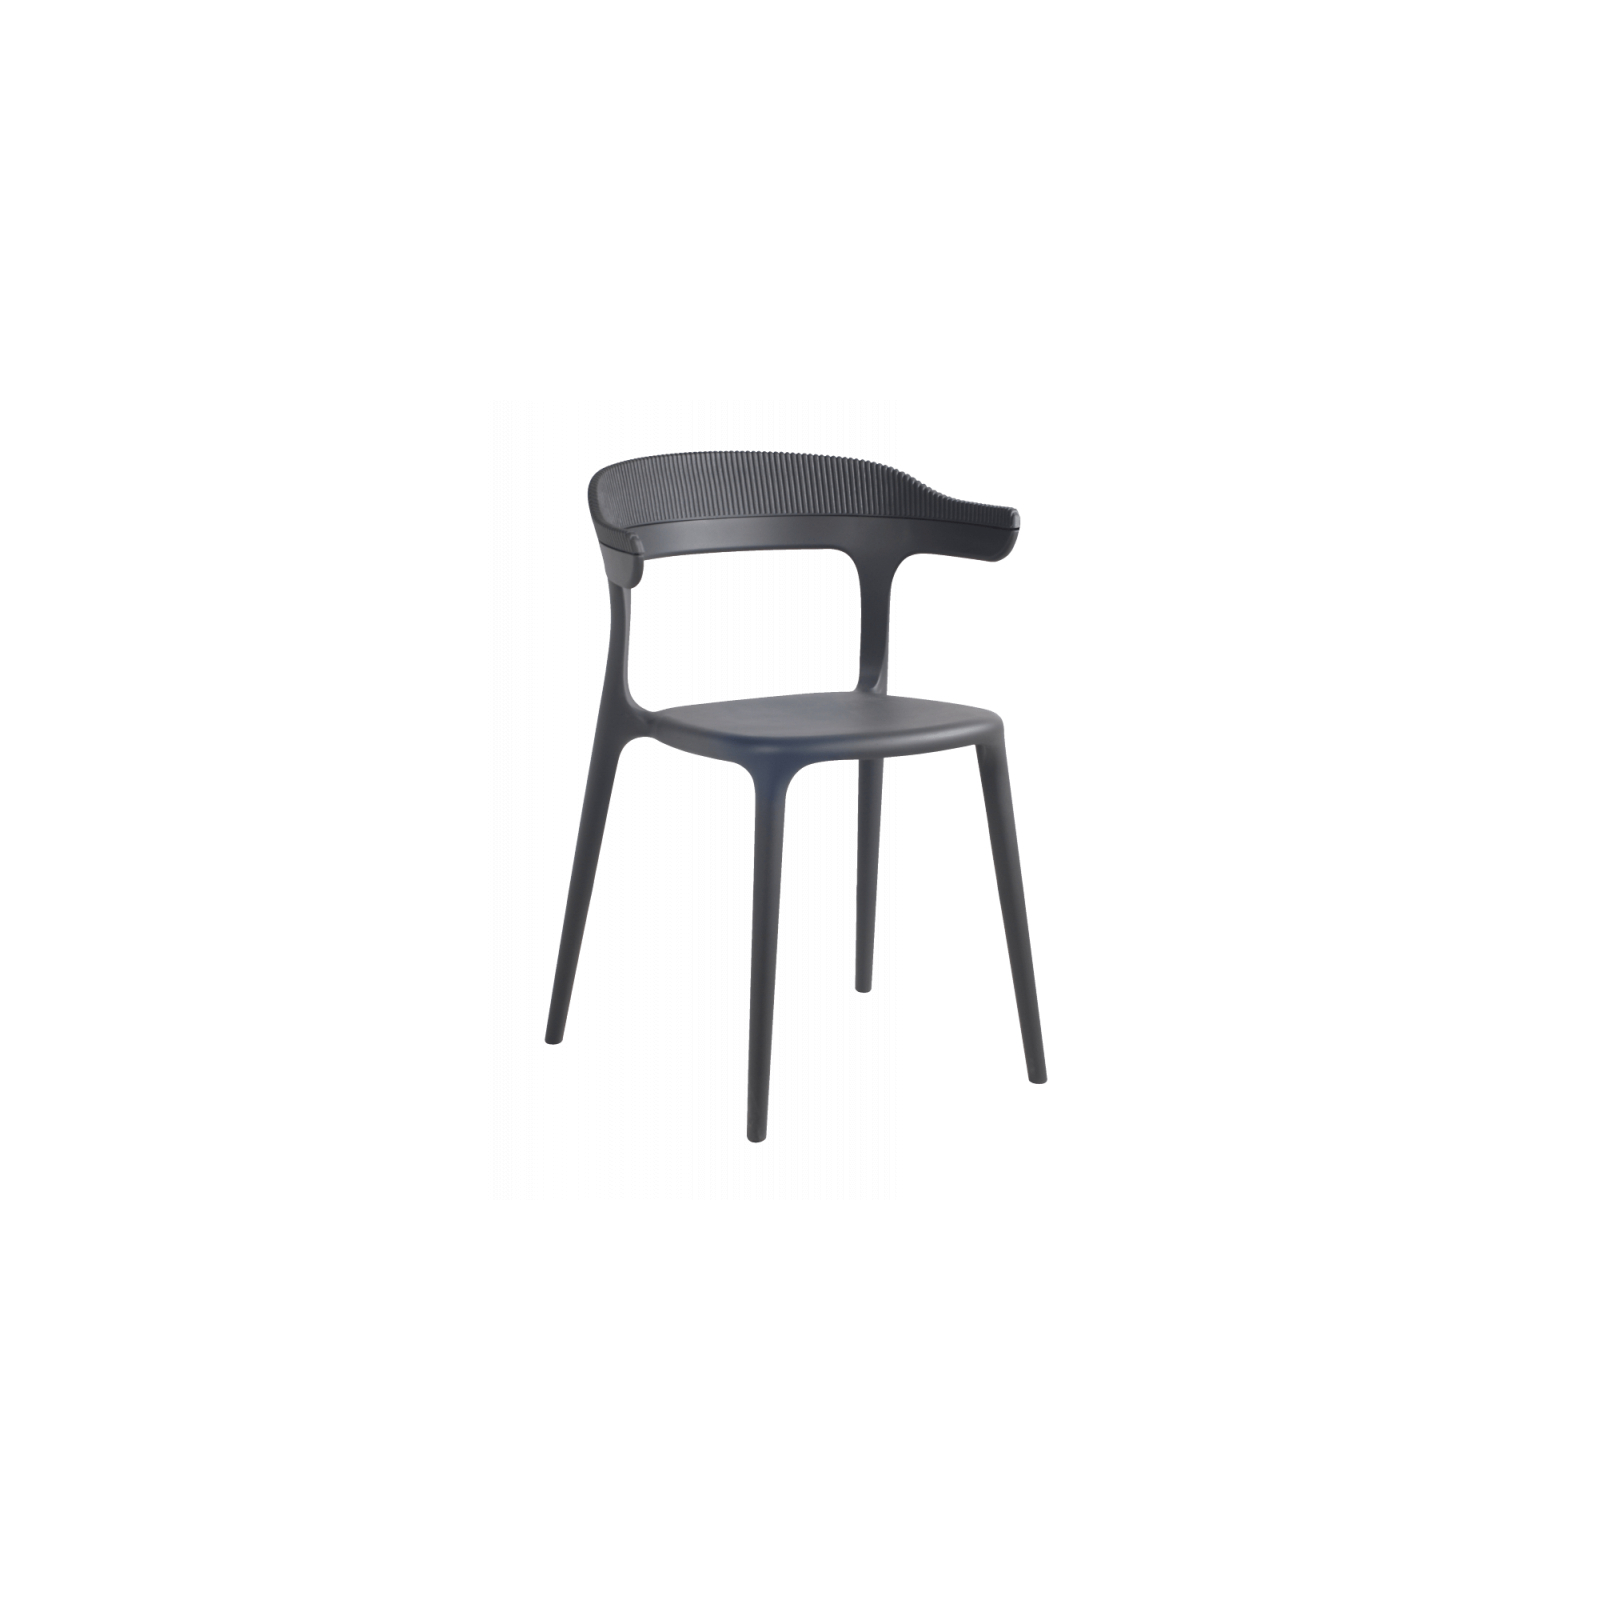 Кухонный стул PAPATYA luna белое, верх прозрачно-чистый (2332)